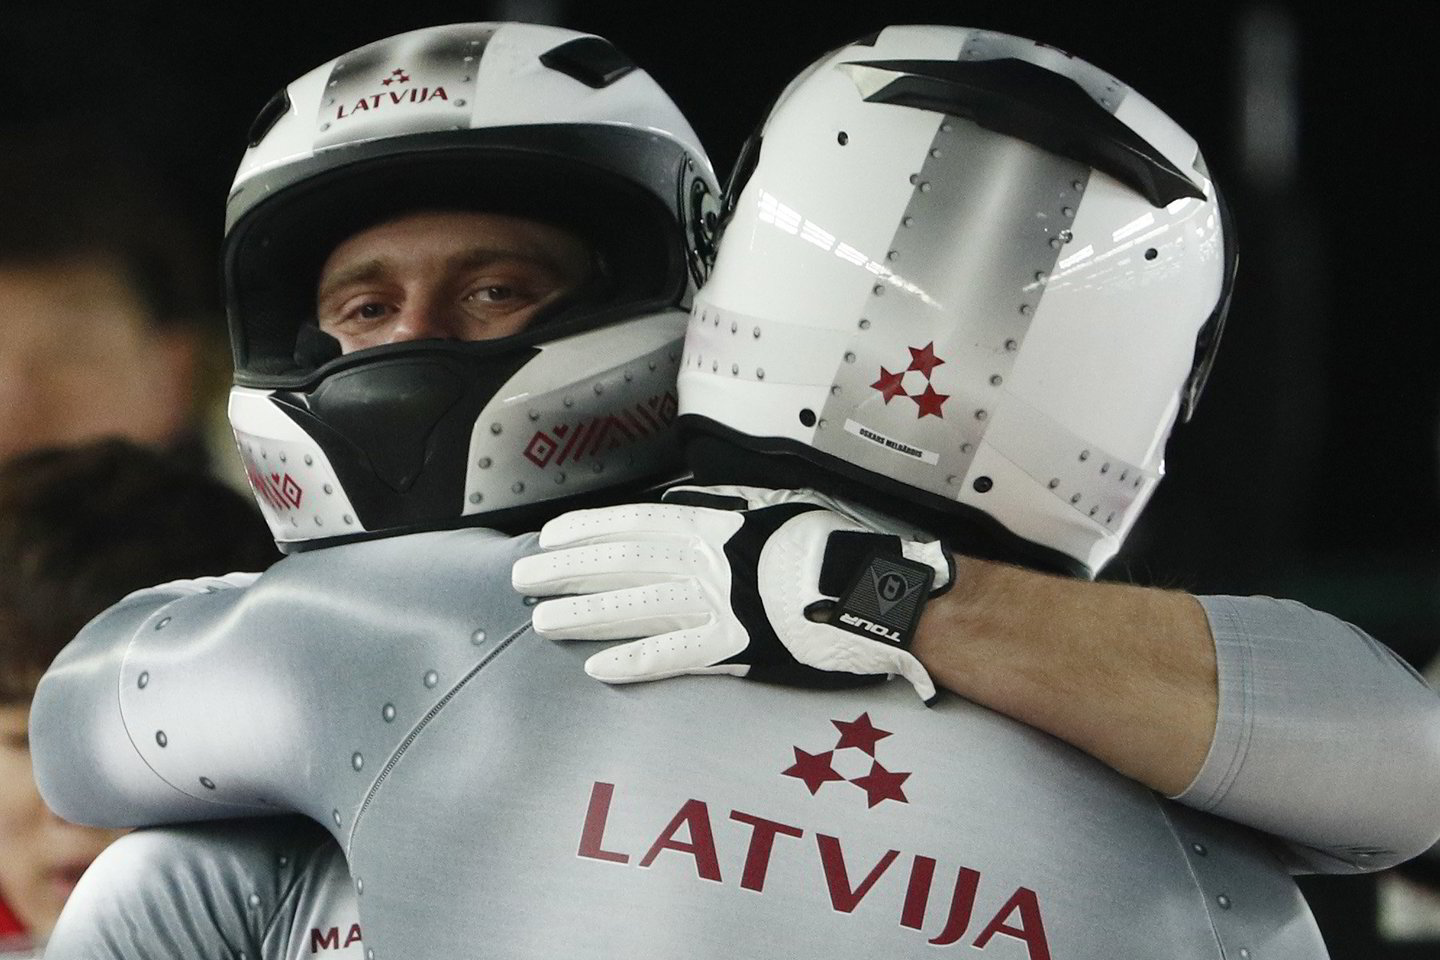  Pjongčango olimpiados vyrų dviviečių  bobslėjaus varžybose pirmadienį Latvijos duetas - Oskaras Melbardis ir Janis Strenga - iškovojo bronzos medalius. Tai pirmieji latvių apdovanojimai šiose žaidynėse. <br> AP nuotr.